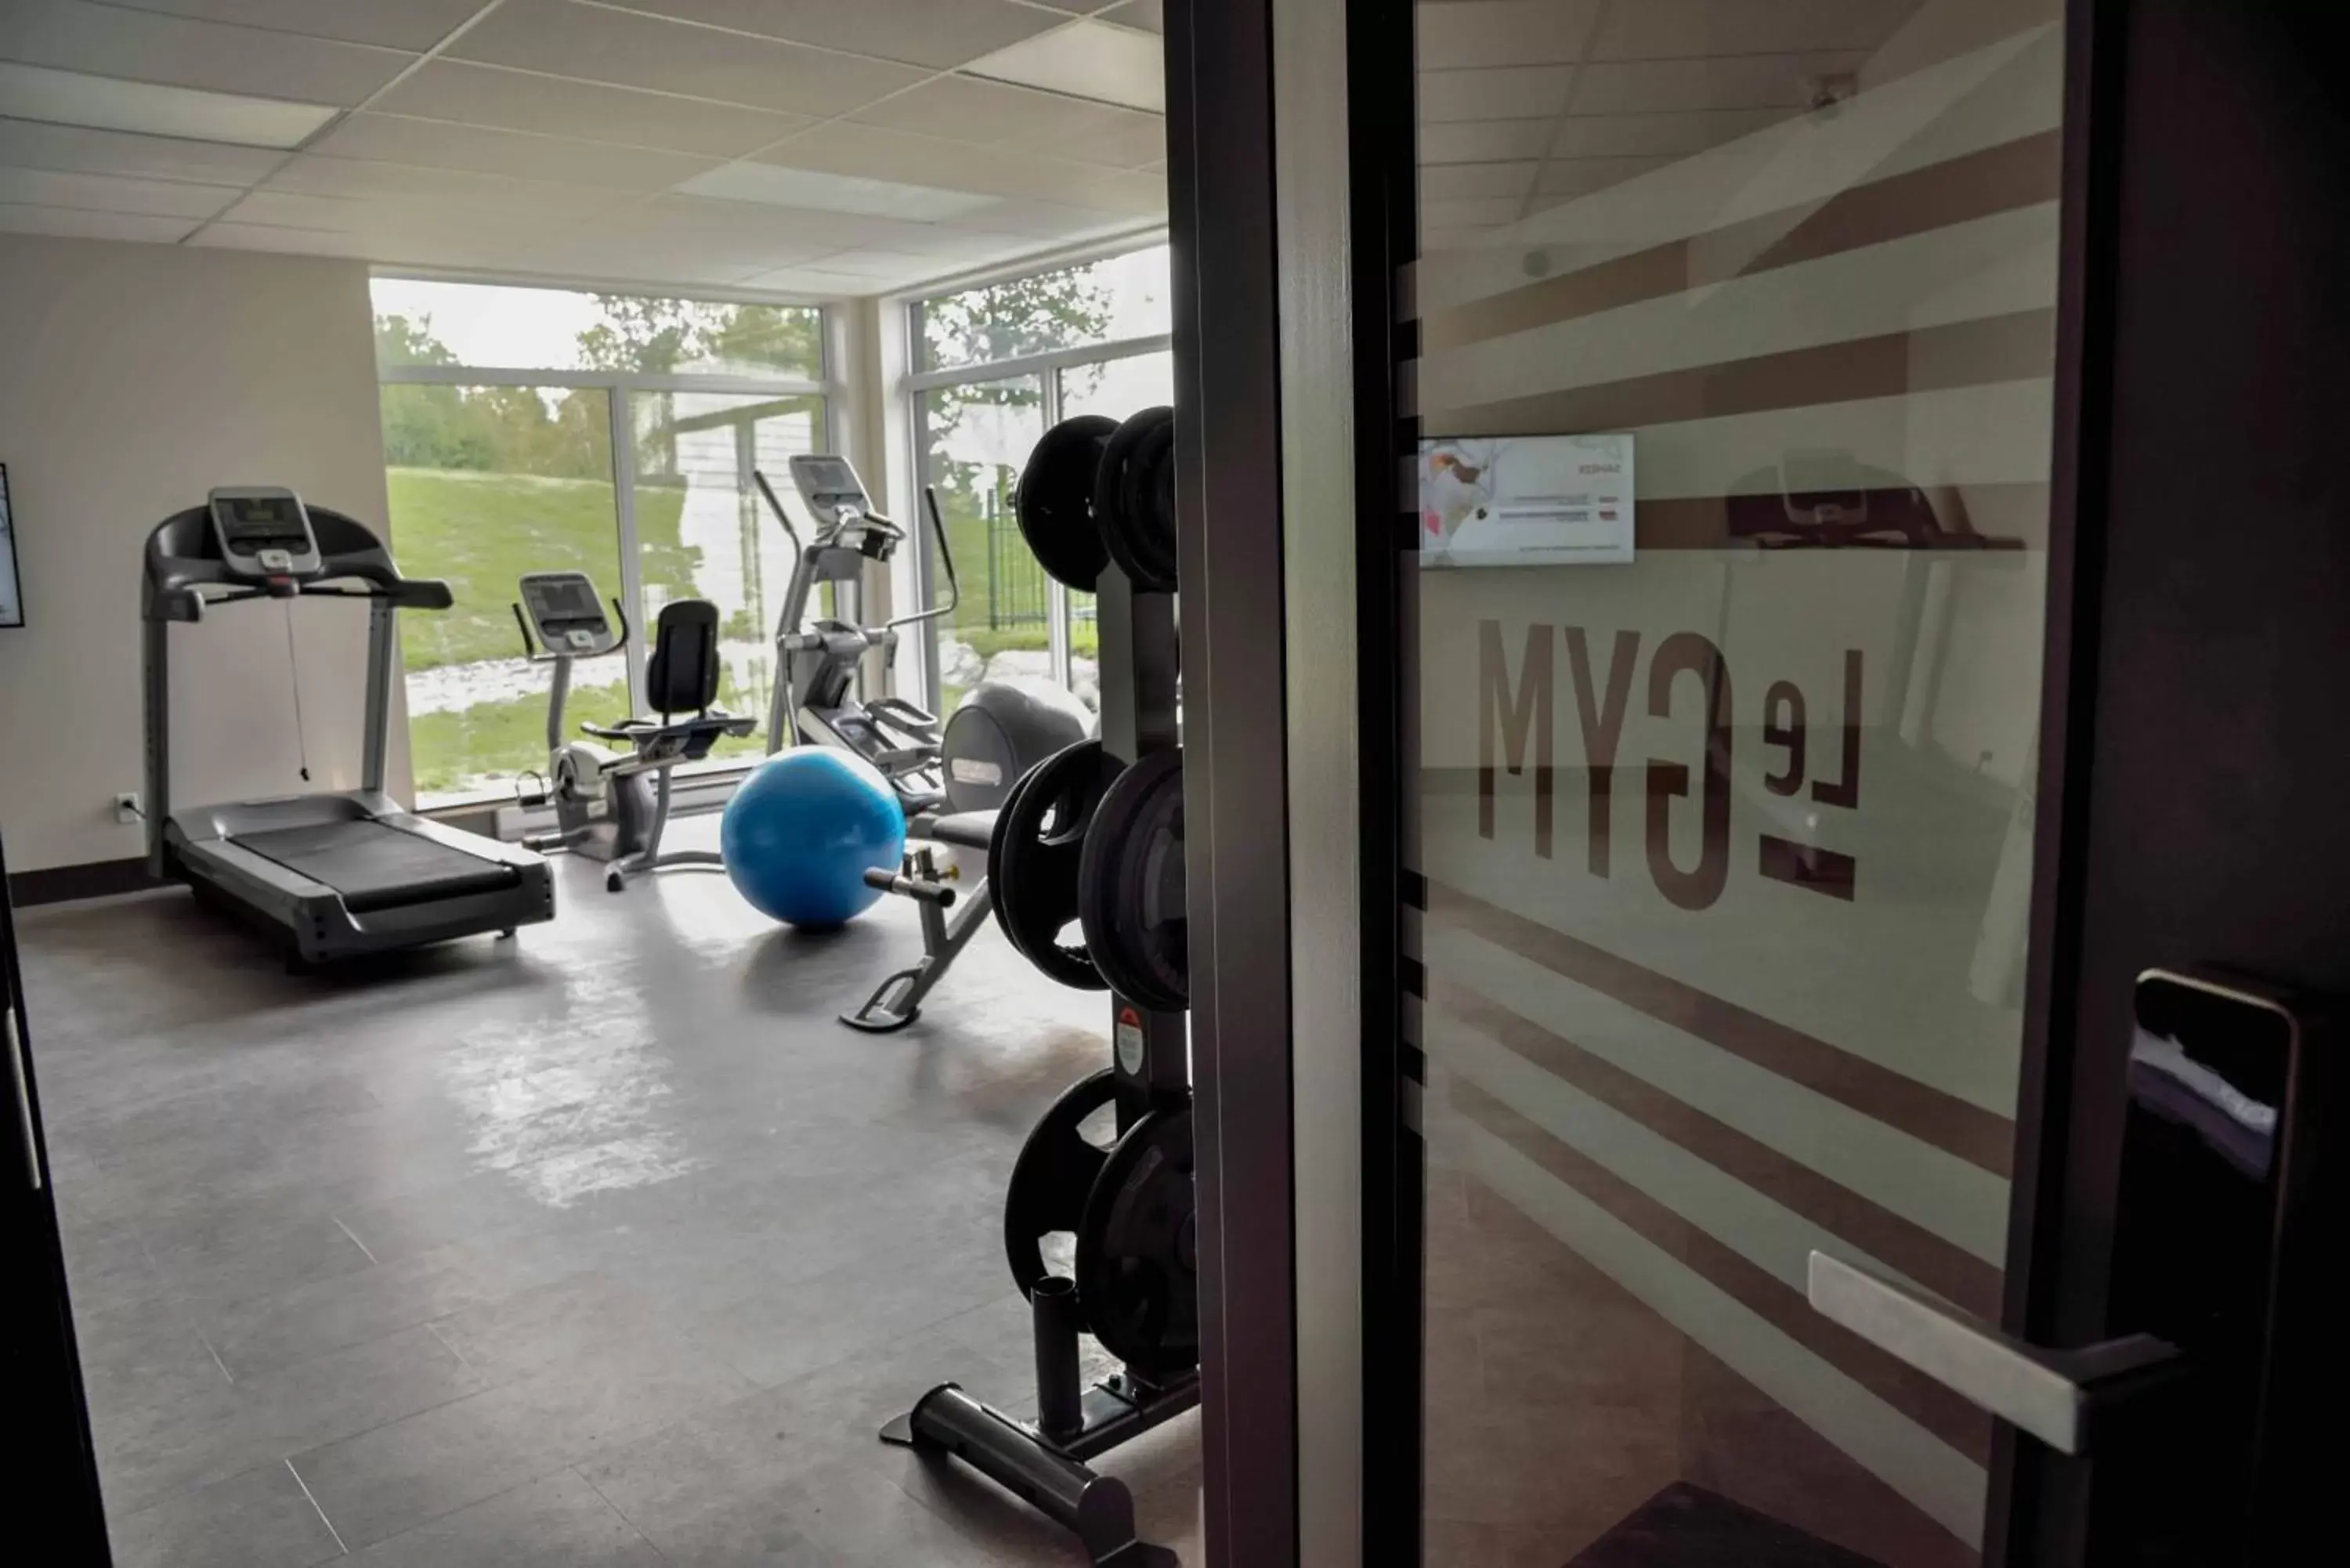 Fitness centre/facilities, Fitness Center/Facilities in La Cache du Golf